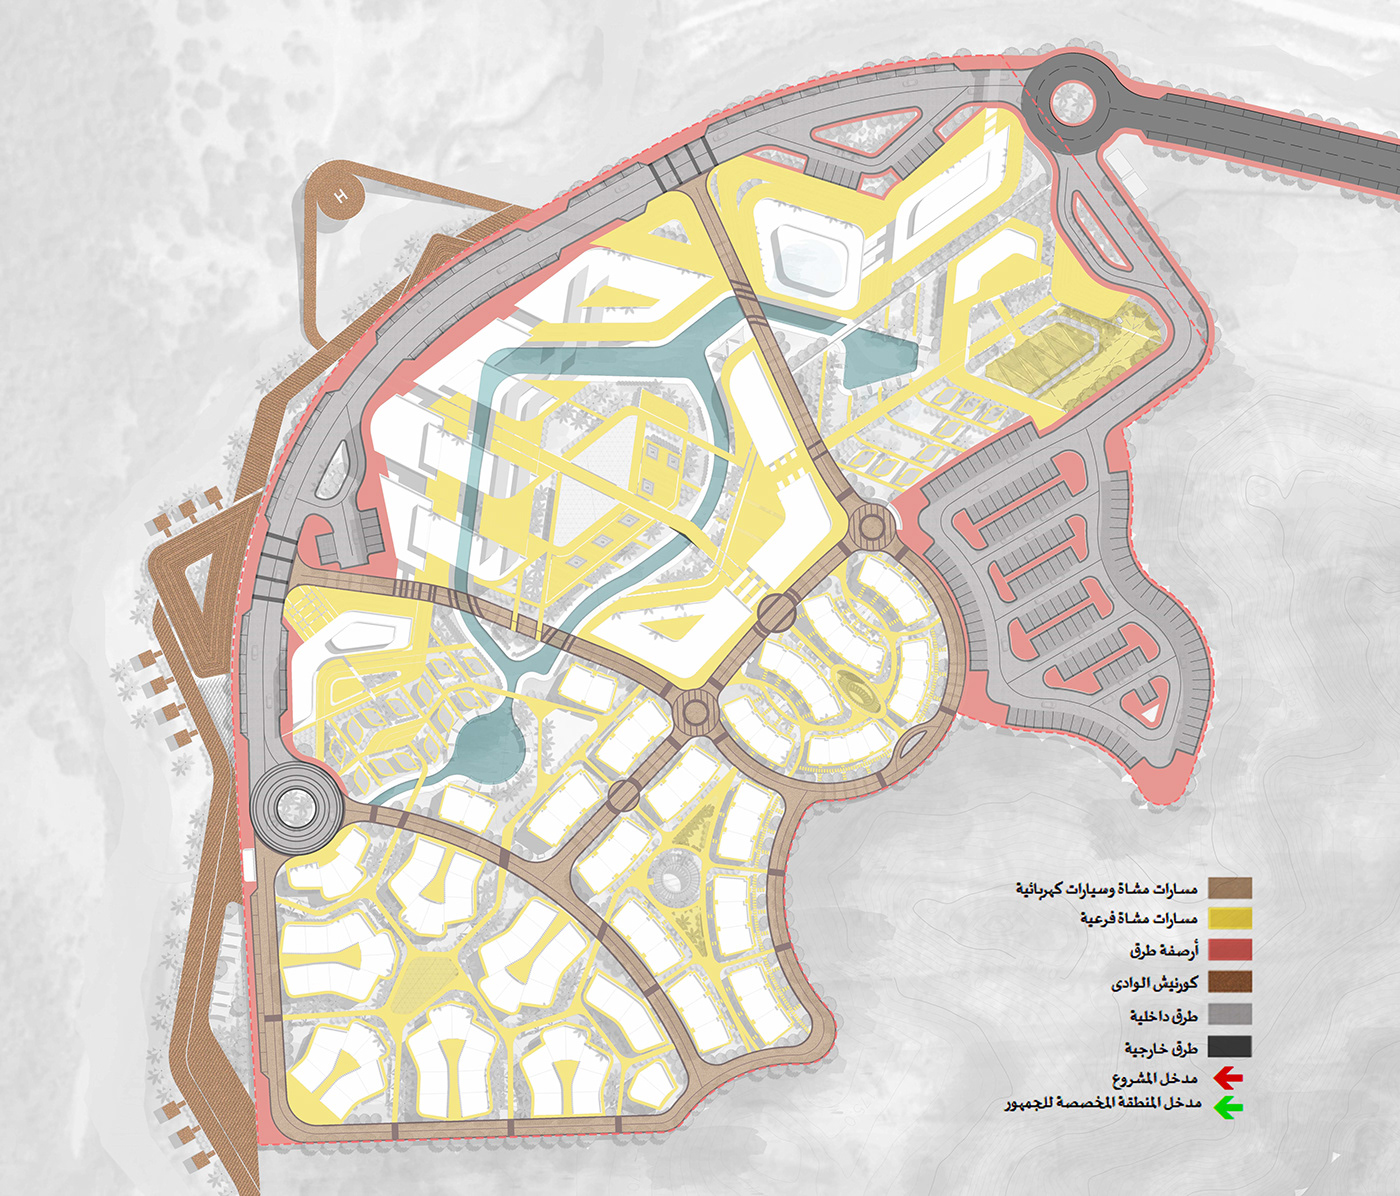 Masterplan Urban Design healing resort KSA Mekkah Recreational architecture urbanplaning